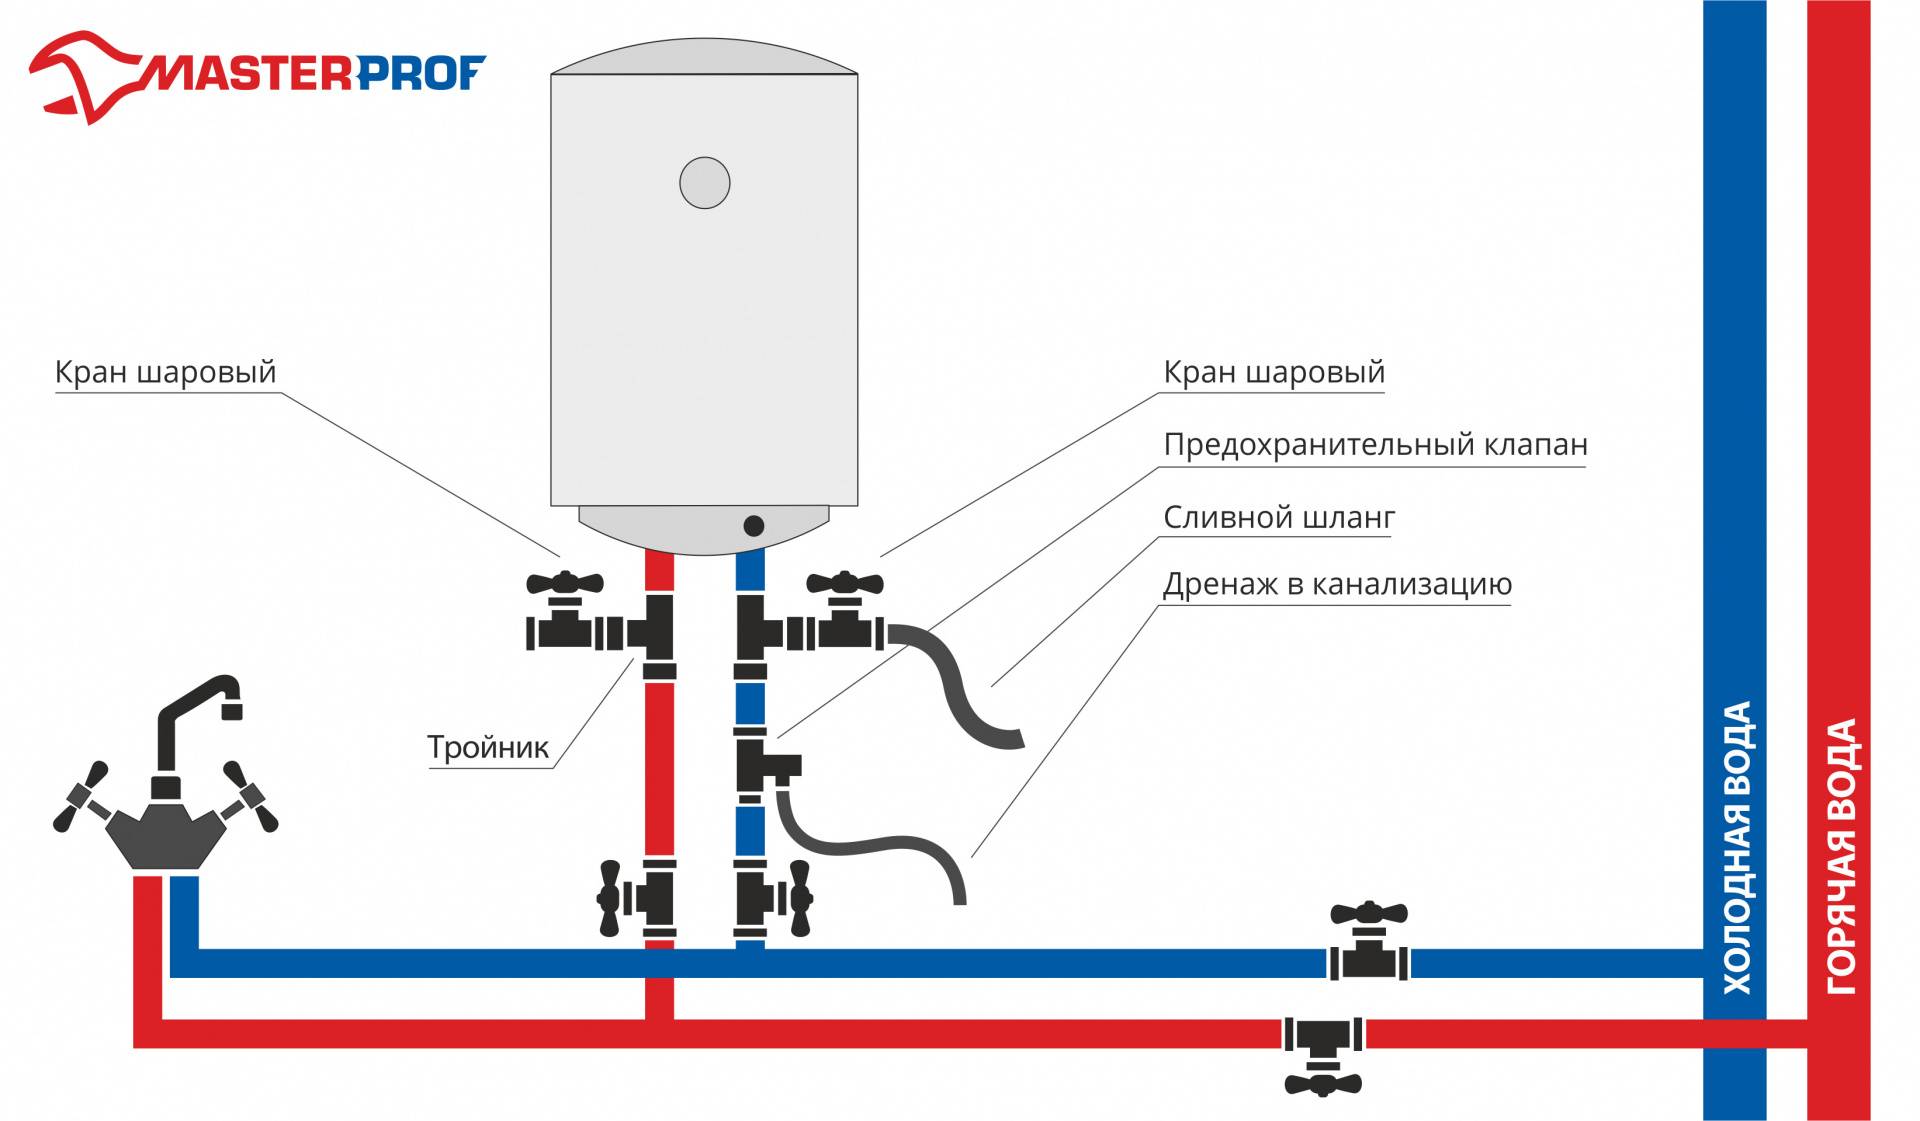 Как обслуживать и ухаживать за водонагревателем: уберечь от блуждающих токов и жесткой воды и другие особенности эксплуатации